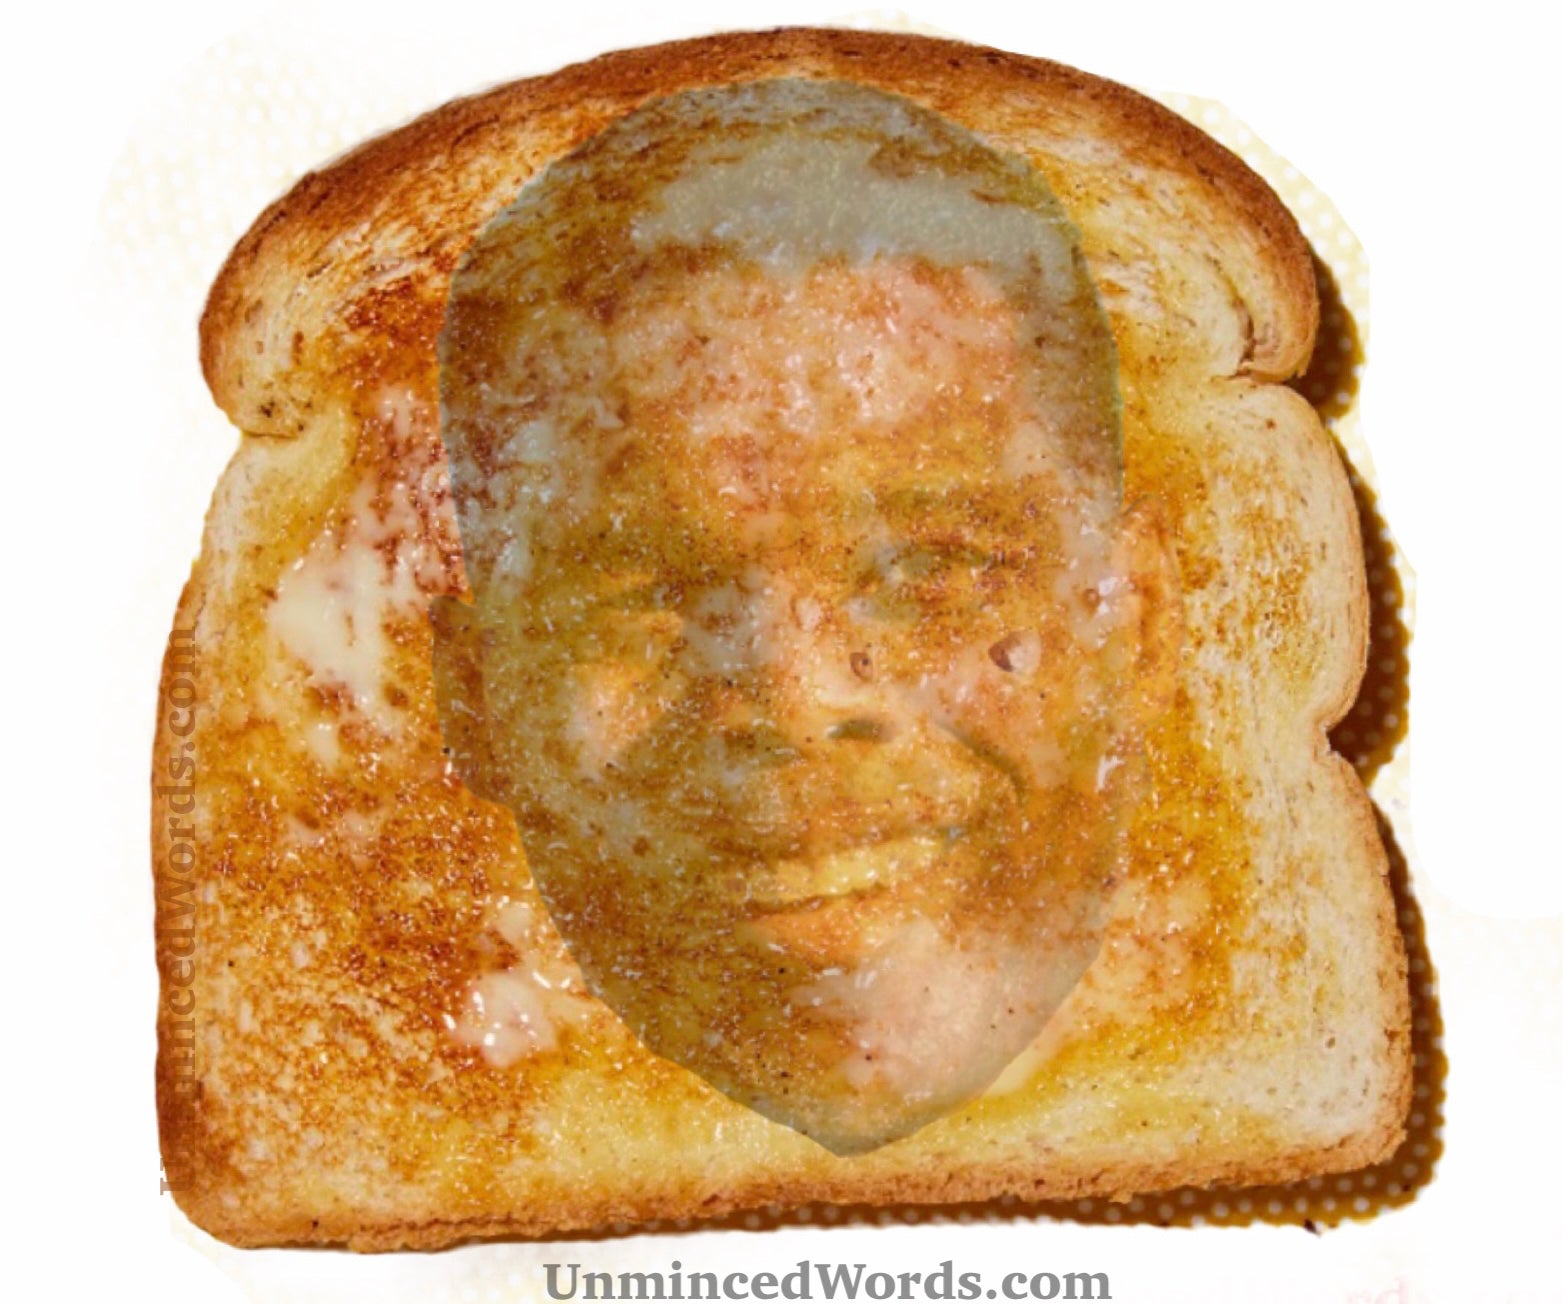 Herschel Walker is Toast